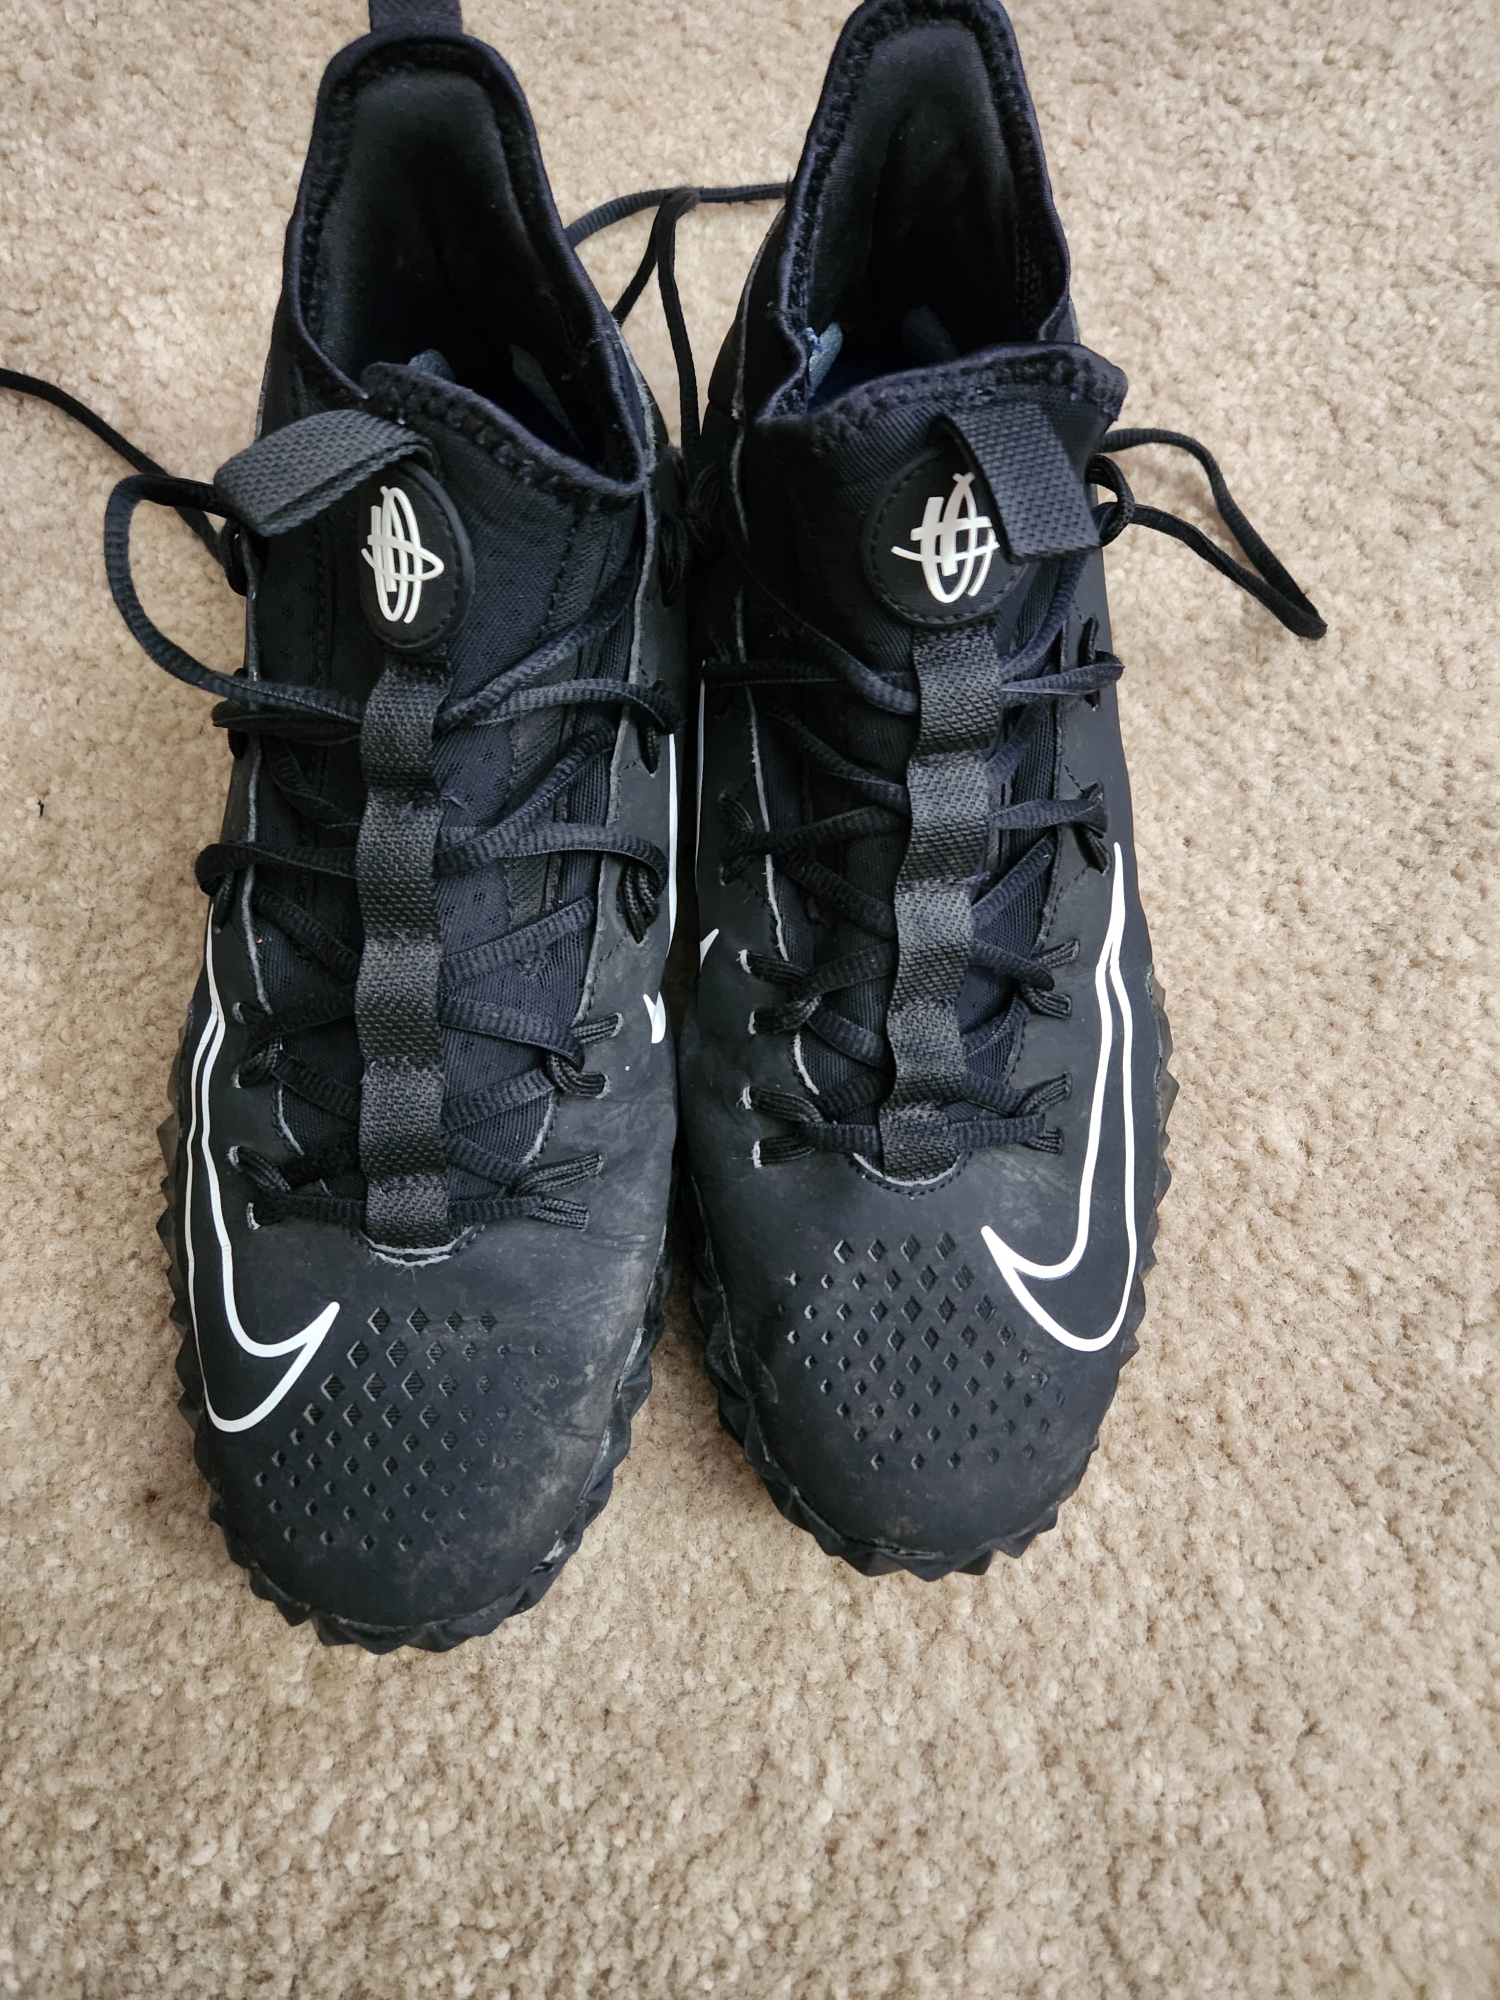 Nike Huarache 6 Men's Size 9.5 (W 10.5) Turf Shoes - Black